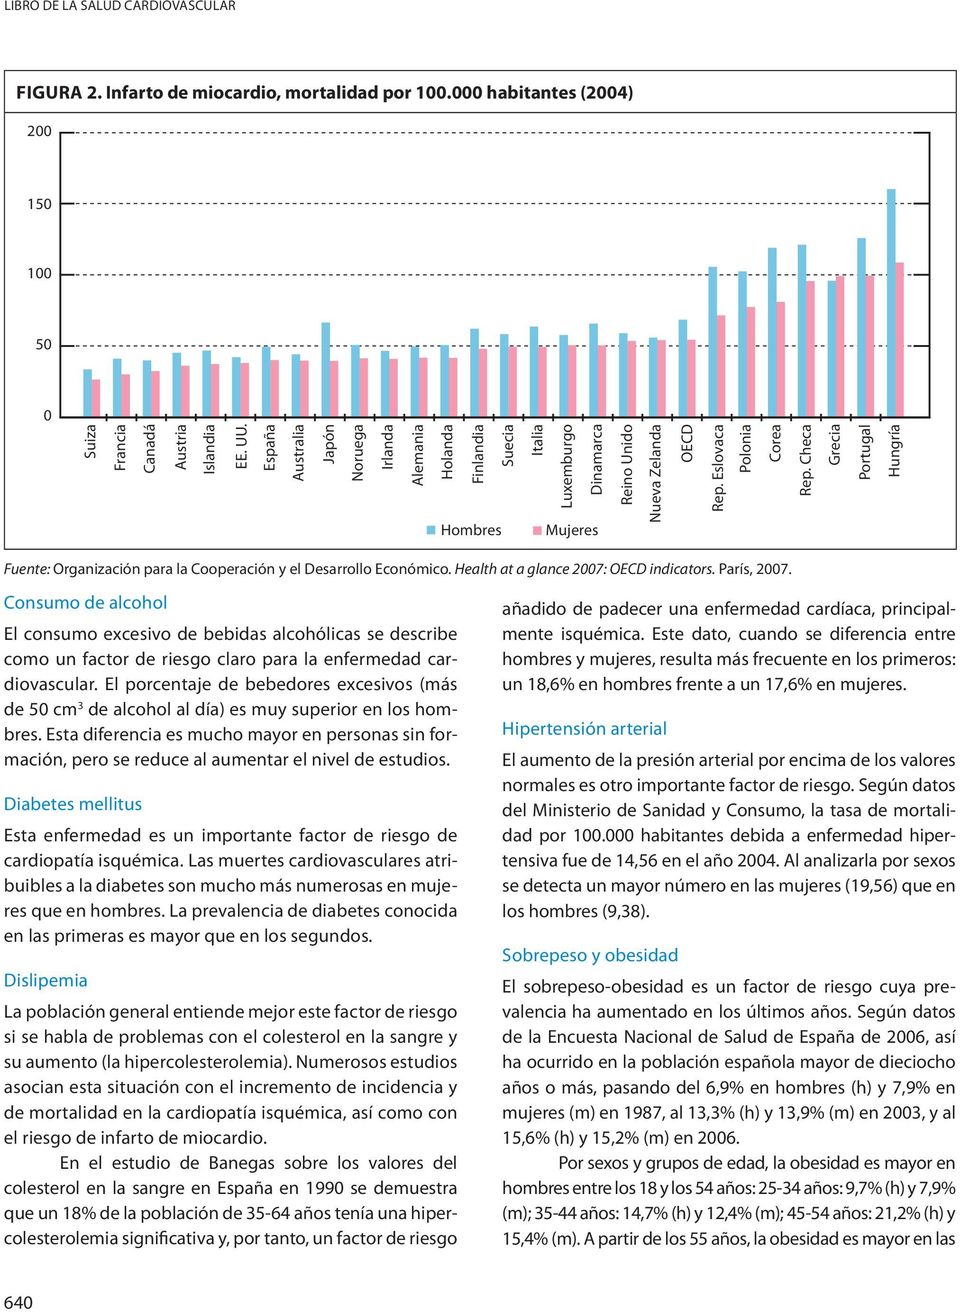 Checa Grecia Portugal Hungría Fuente: Organización para la Cooperación y el Desarrollo Económico. Health at a glance 27: OECD indicators. París, 27.